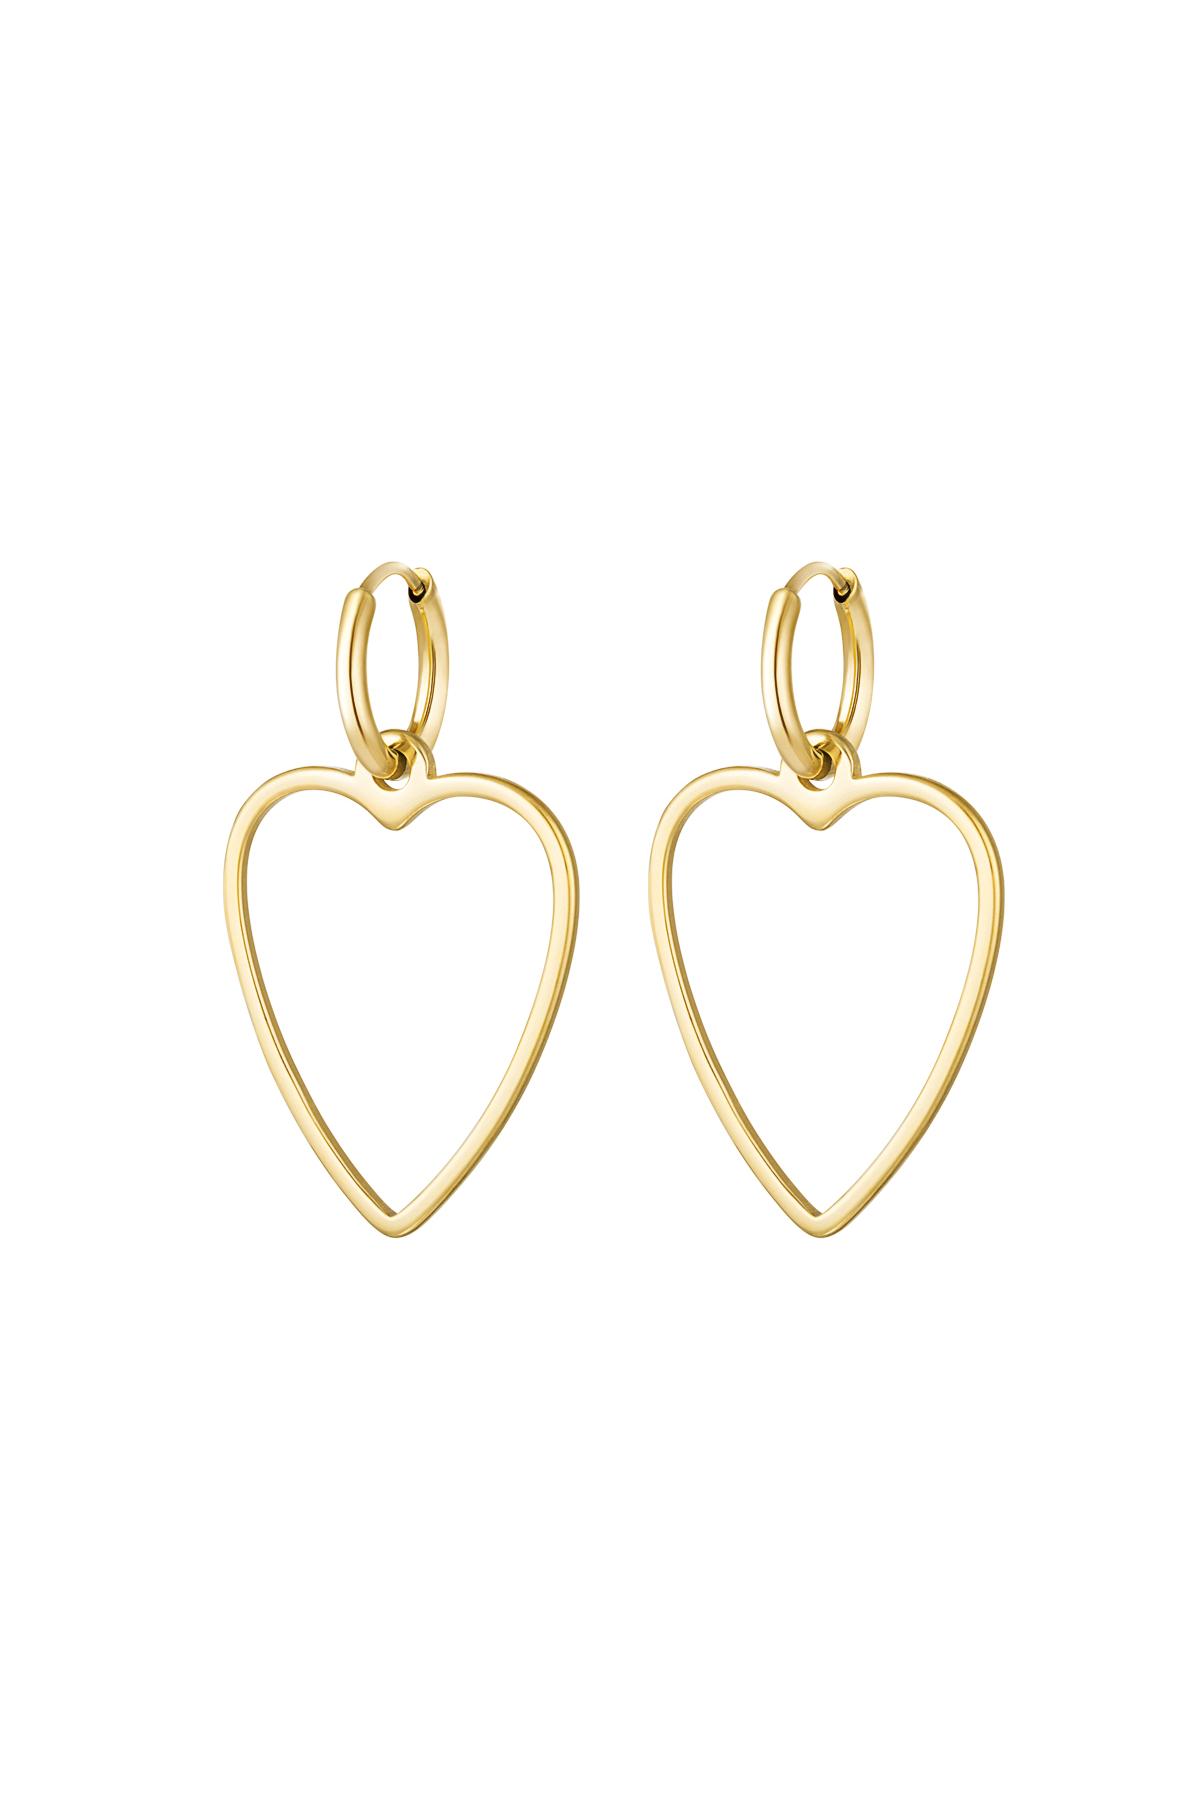 Earrings basic heart Gold Stainless Steel 